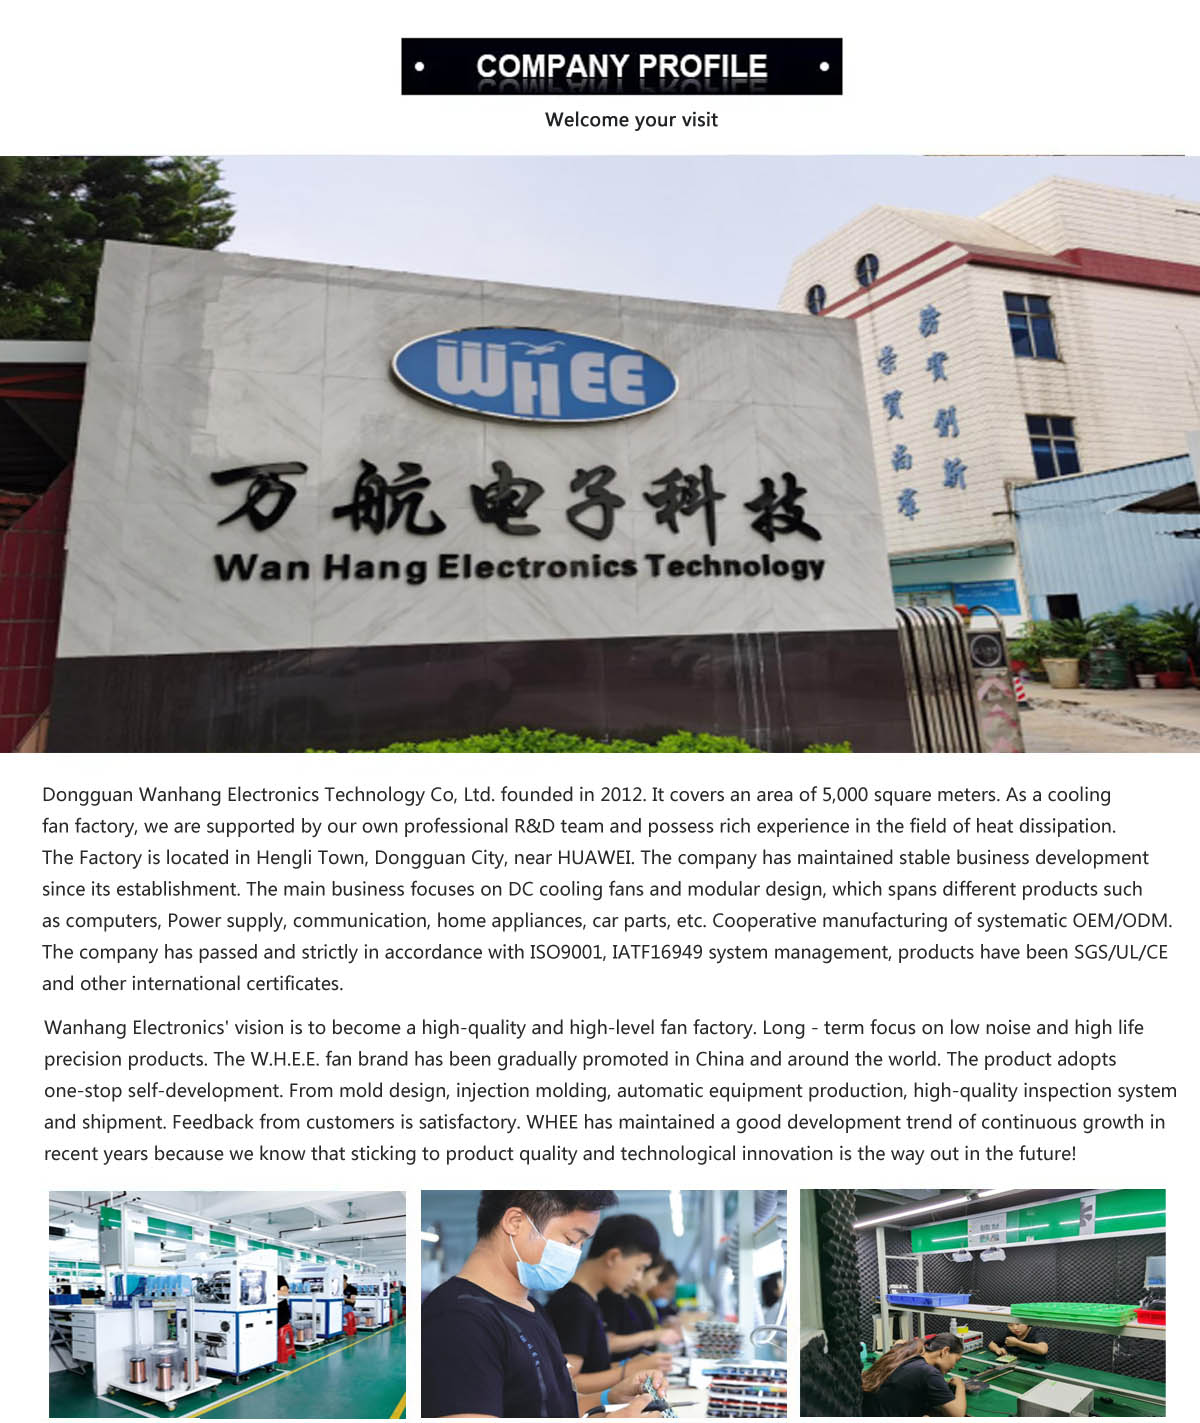 Dongguan Wanhang Electronic Technology Co., Ltd